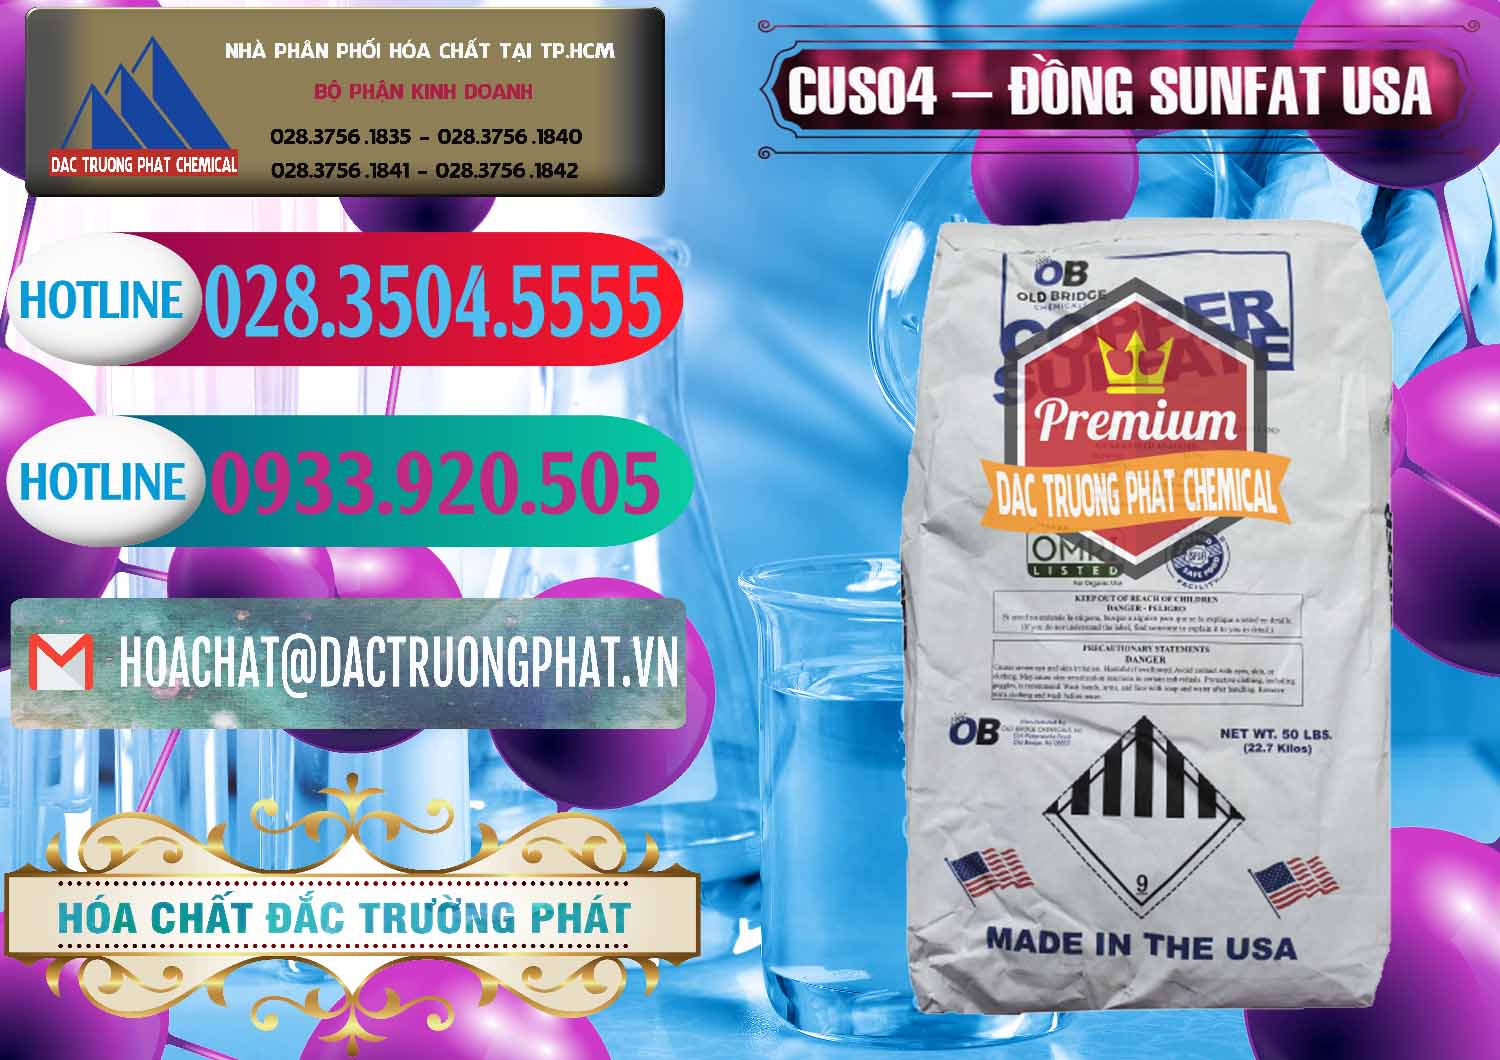 Công ty kinh doanh và bán CuSO4 – Đồng Sunfat Mỹ USA - 0479 - Công ty nhập khẩu _ phân phối hóa chất tại TP.HCM - truongphat.vn